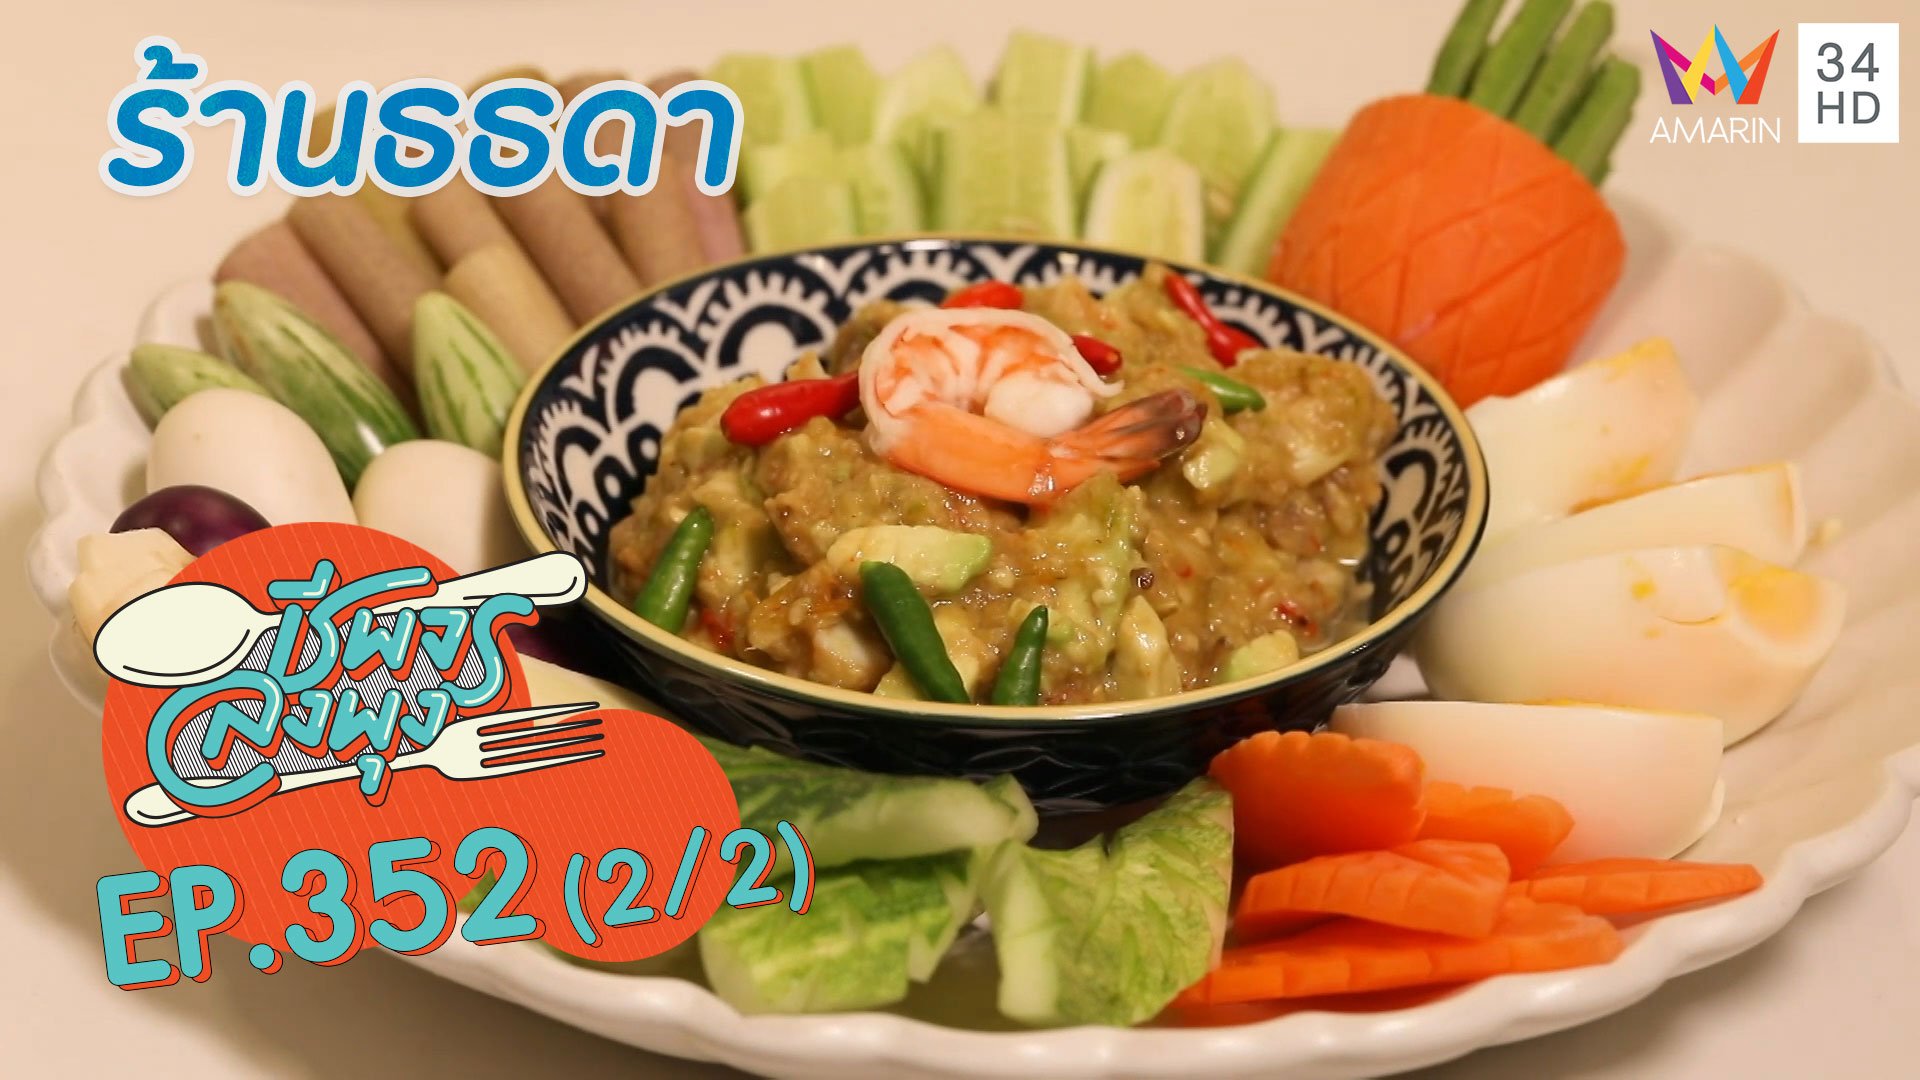 ลิ้มรสอาหารไทยหากินยาก @ ร้าน ธธดา | ชีพจรลงพุง | 19 ธ.ค. 64 (2/2) | AMARIN TVHD34